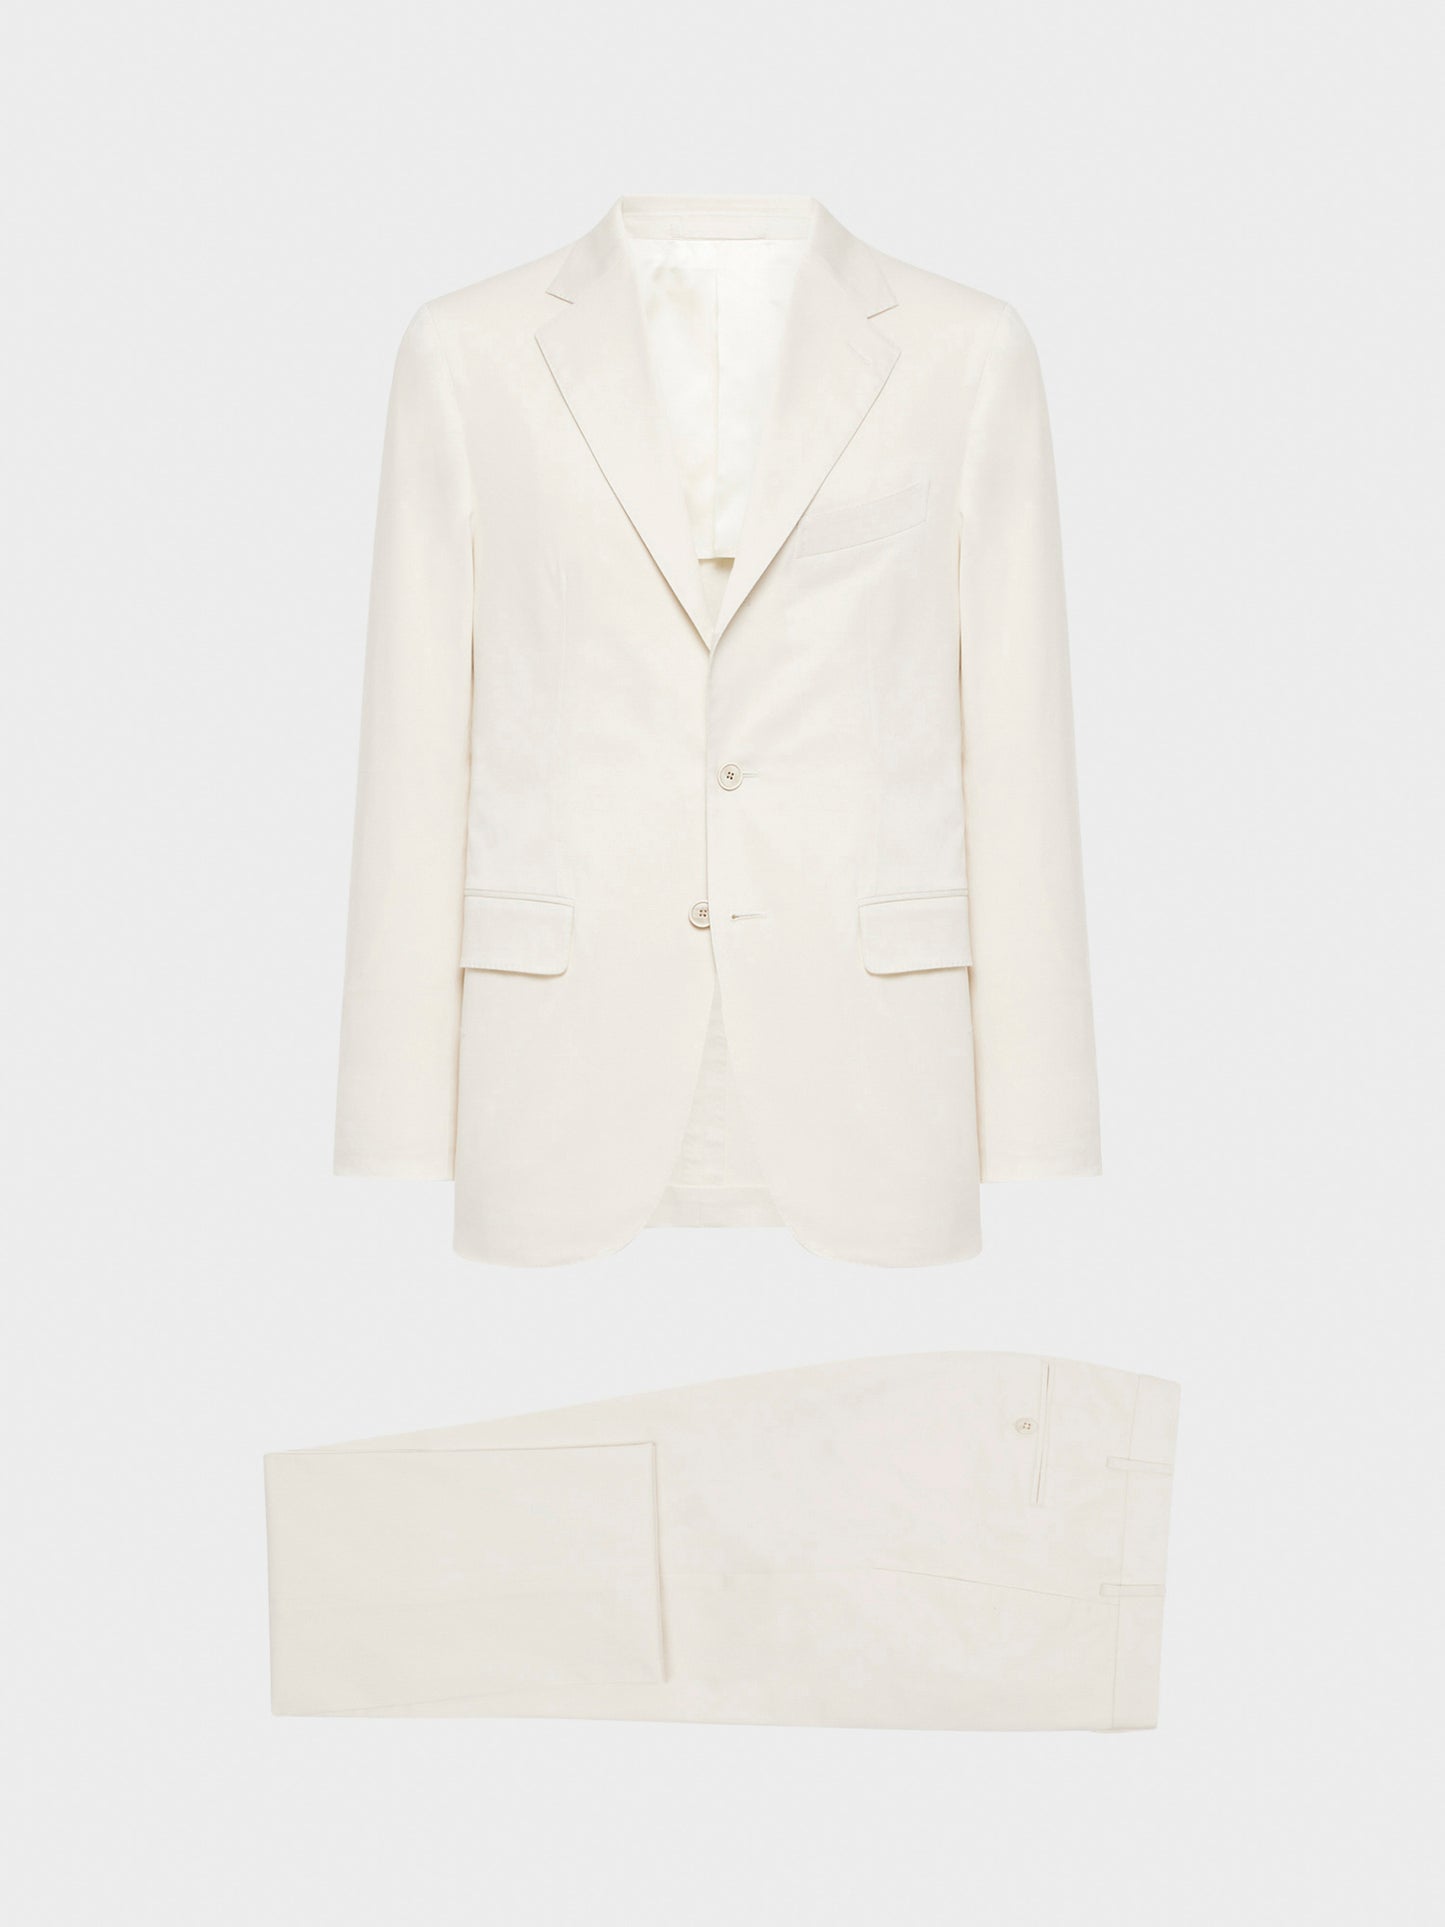 Caruso Menswear Abbigliamento Uomo Abito Aida in cotone-elastane bianco drop 8R giacca e pantalone